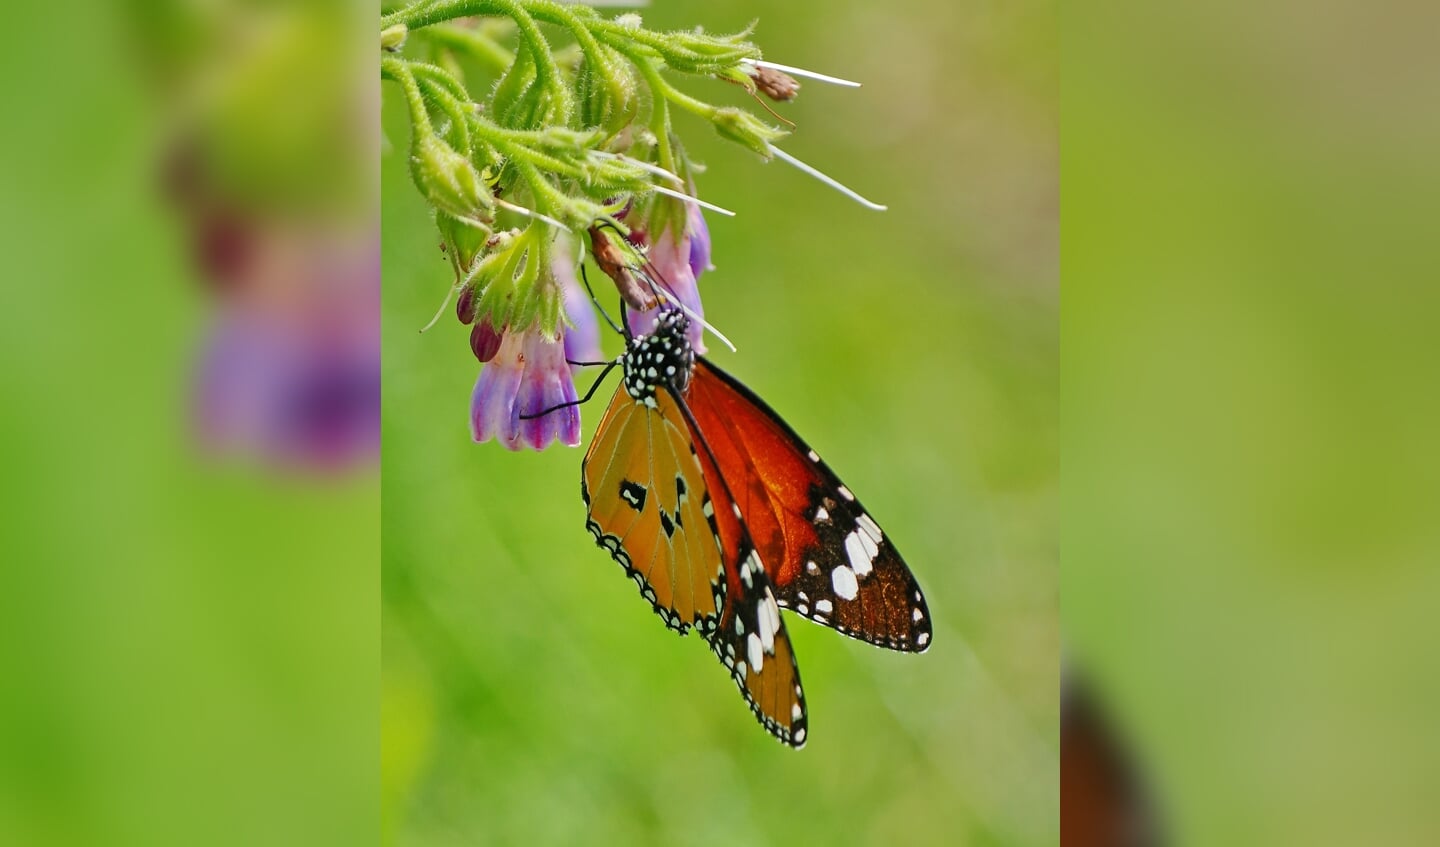 De Monarchvlinder die waarschijnlijk vanuit de Botanische tuinen van de RUU naar Sandwijck is gegaan.